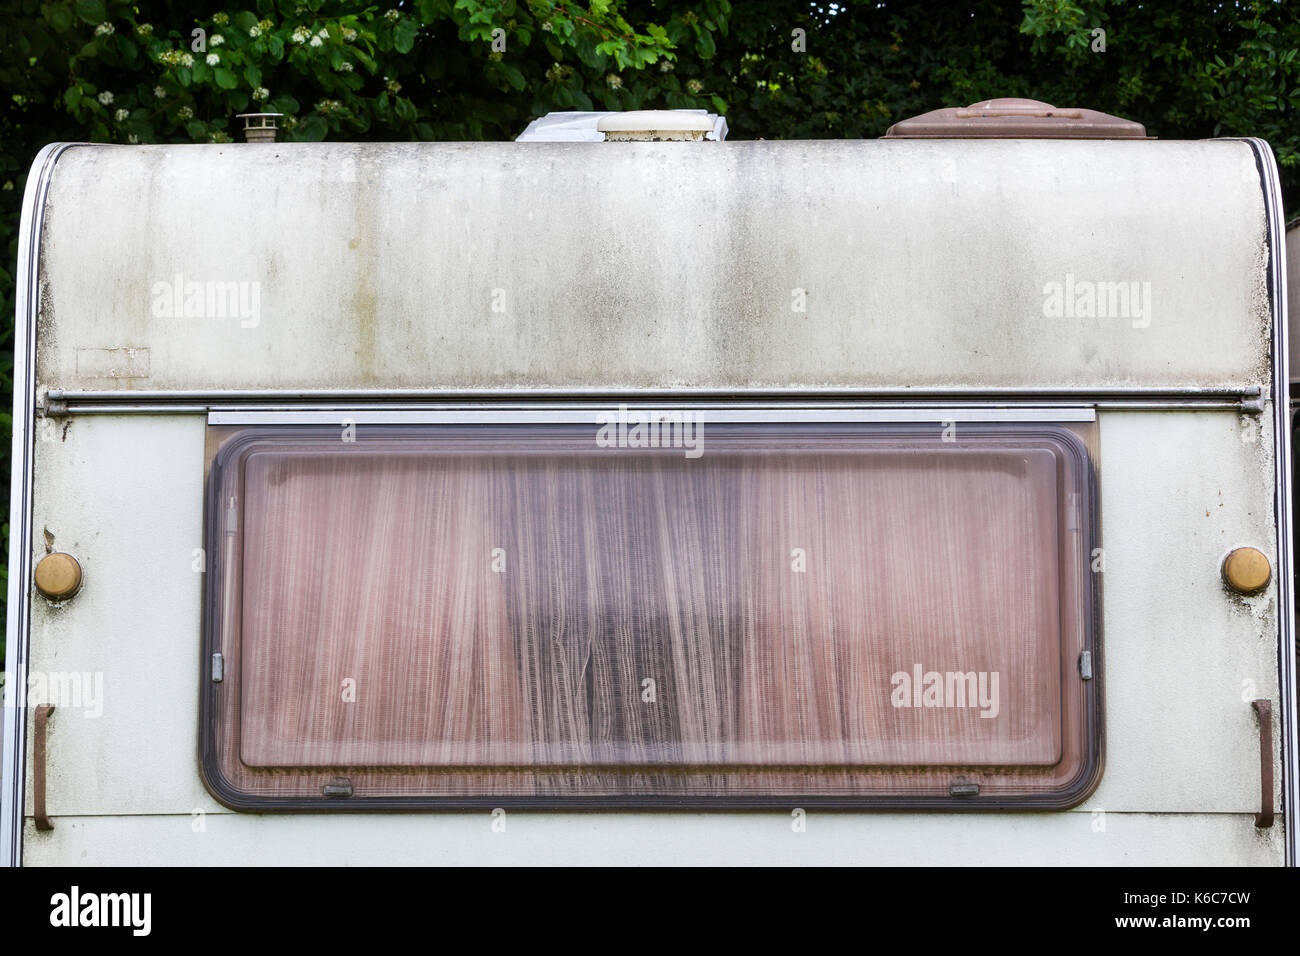 Close-up de l'arrière d'une caravane vintage aux Pays-Bas Banque D'Images